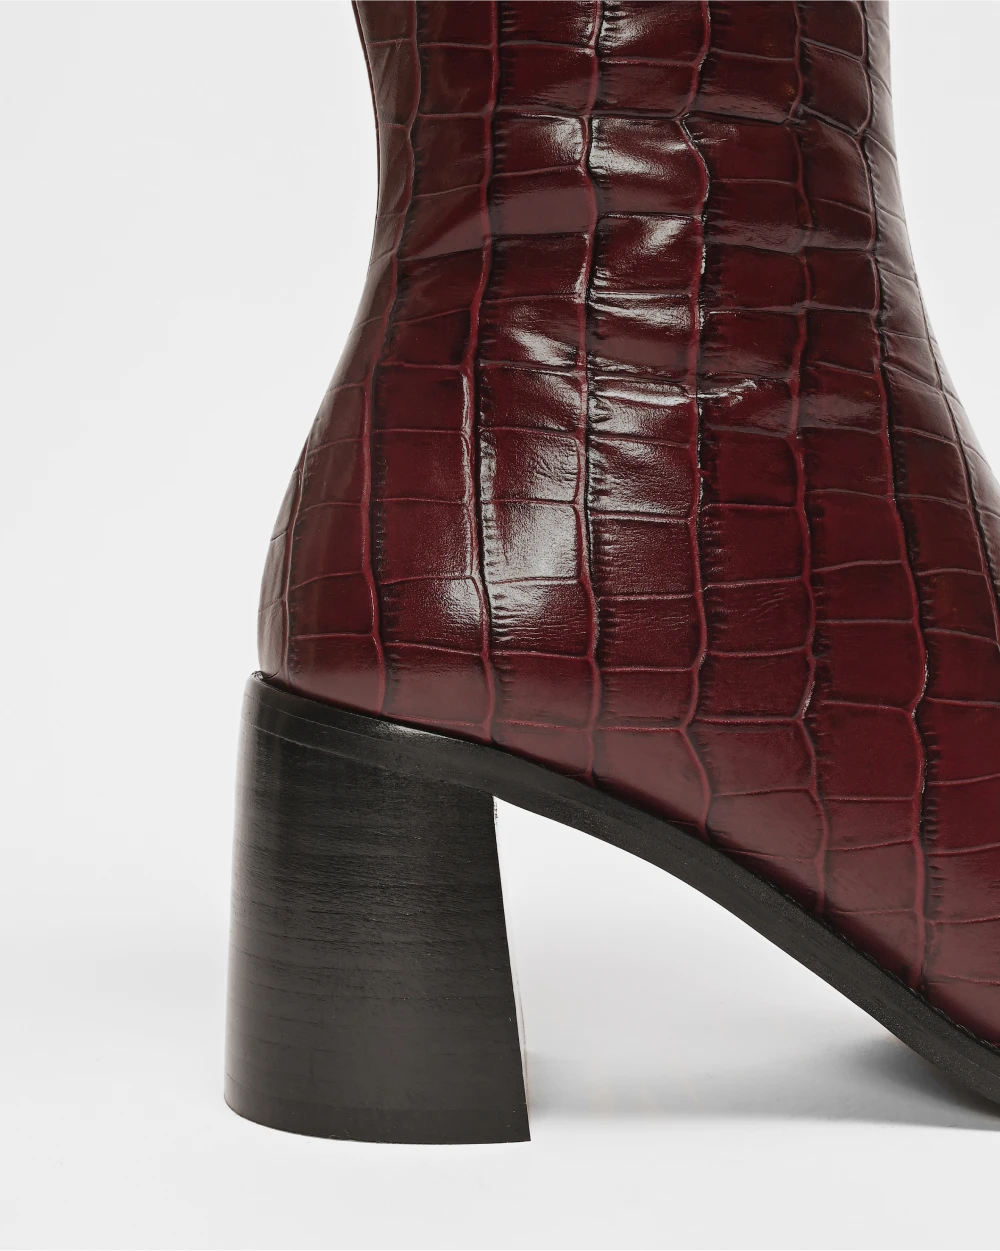 CRISTOBAL les bottes à talons épais au style retro et cuir d'exception upcyclé bordeaux embossé croco.